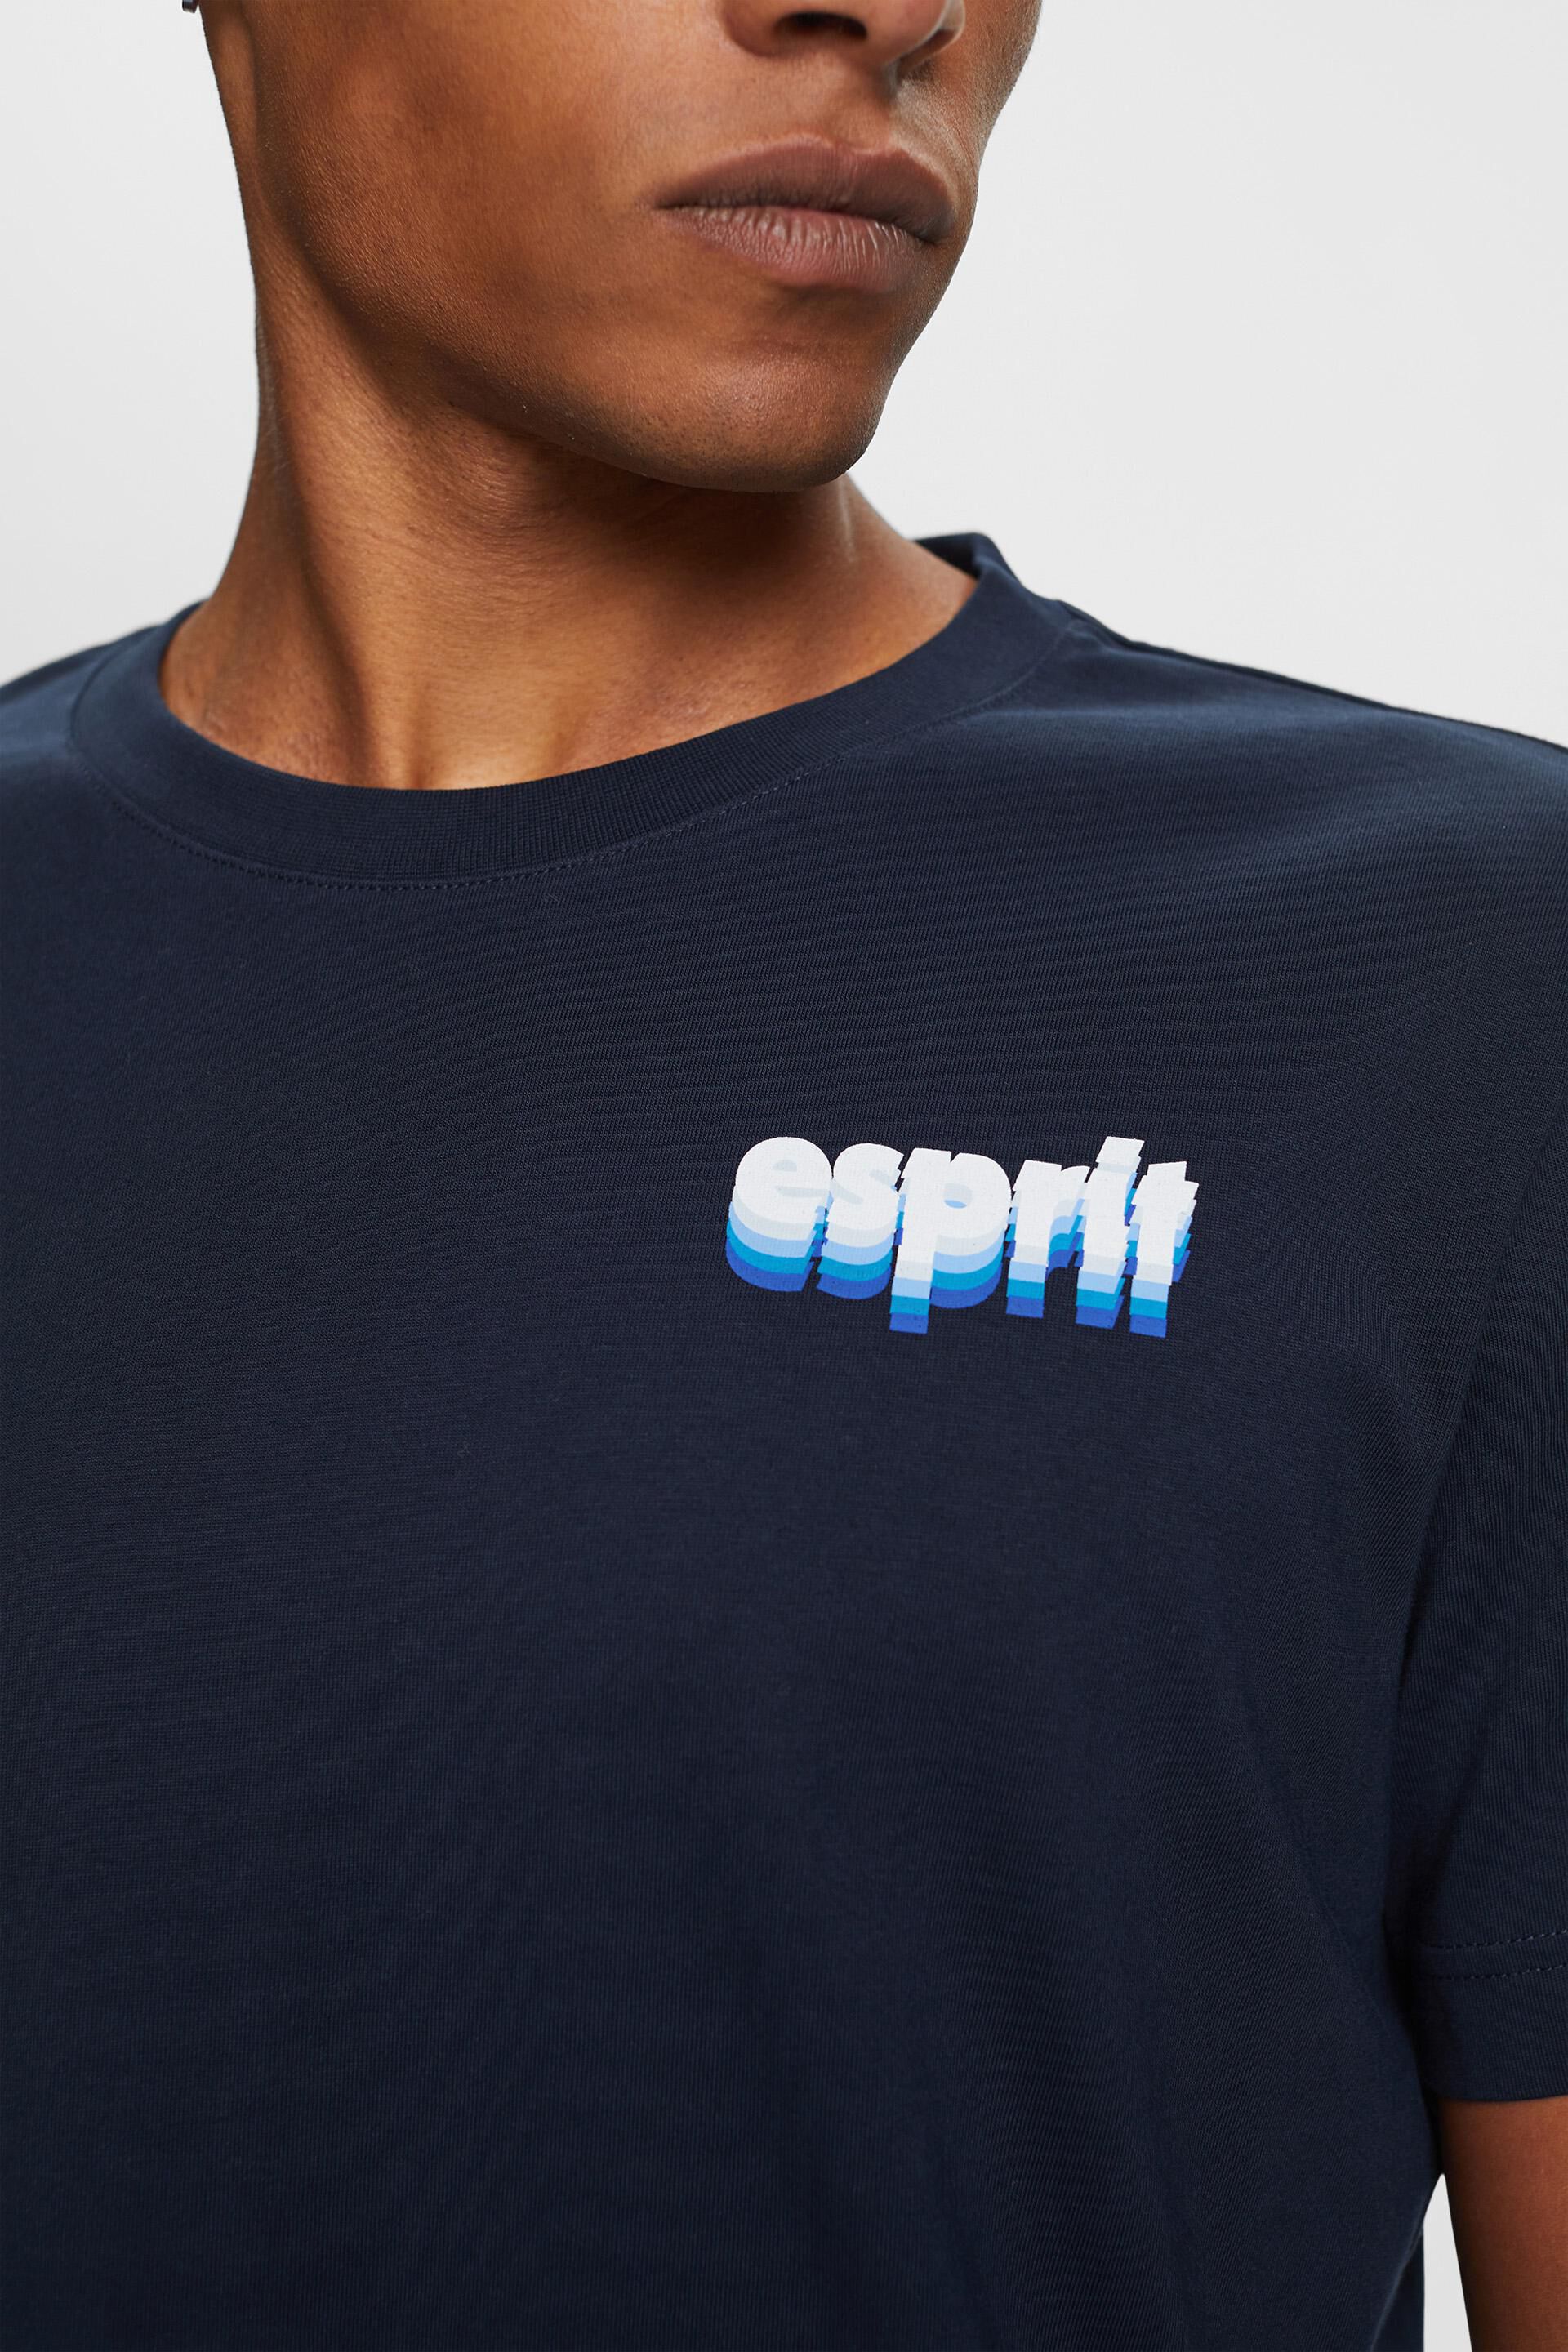 Esprit % 100 mit Aufdruck, Jersey-T-Shirt Baumwolle